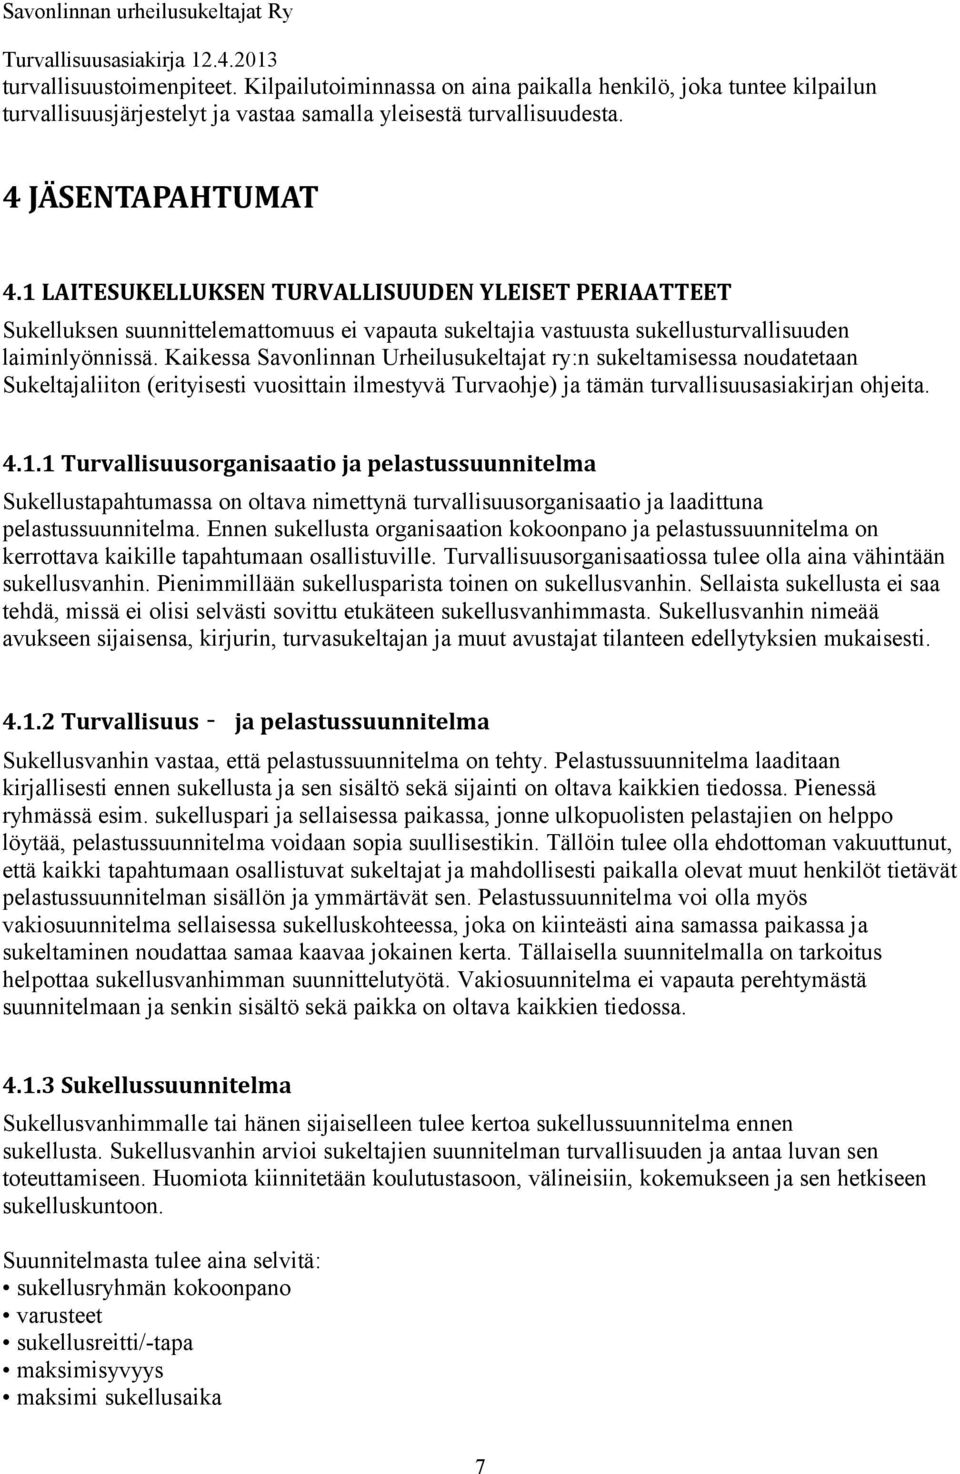 Kaikessa Savonlinnan Urheilusukeltajat ry:n sukeltamisessa noudatetaan Sukeltajaliiton (erityisesti vuosittain ilmestyvä Turvaohje) ja tämän turvallisuusasiakirjan ohjeita. 4.1.